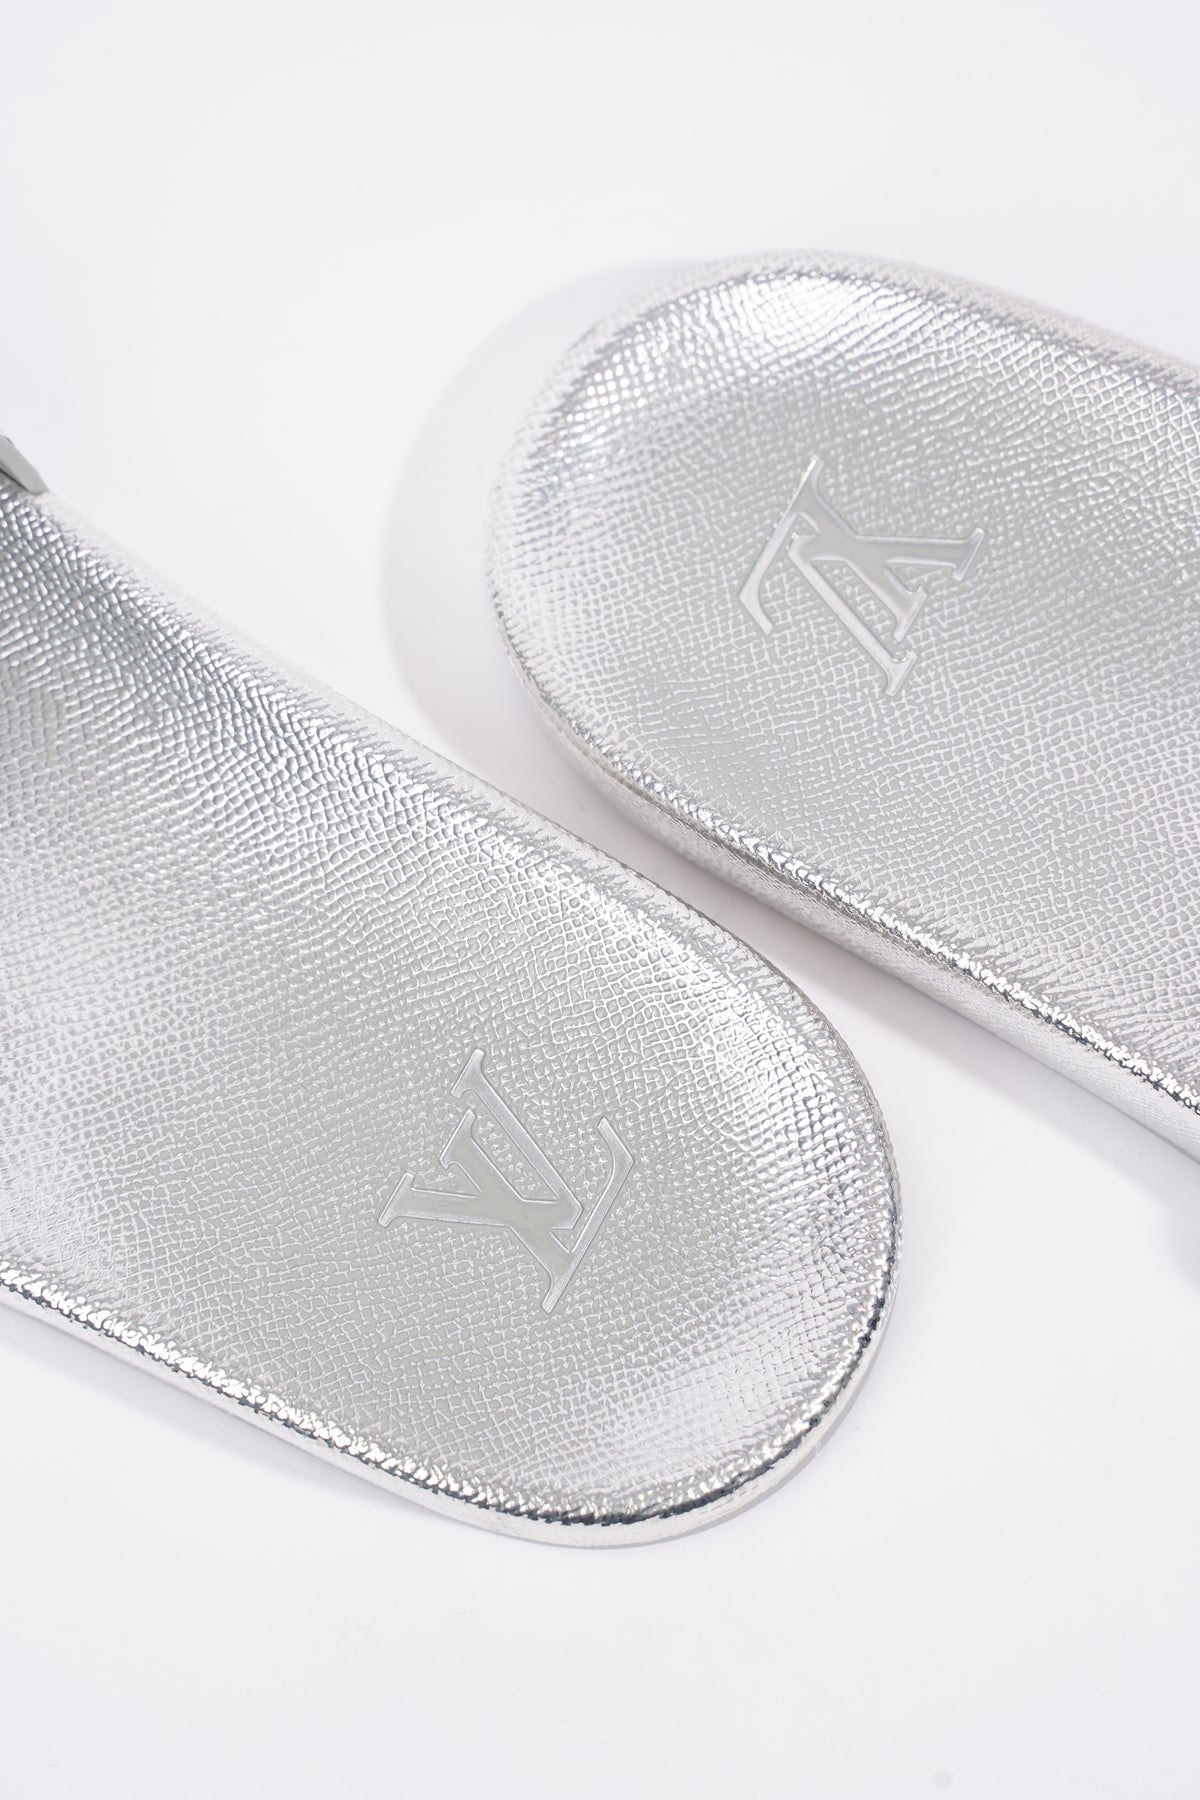 Louis Vuitton Silver Leather Lock It Slide Sandals Size 375 Louis Vuitton   TLC